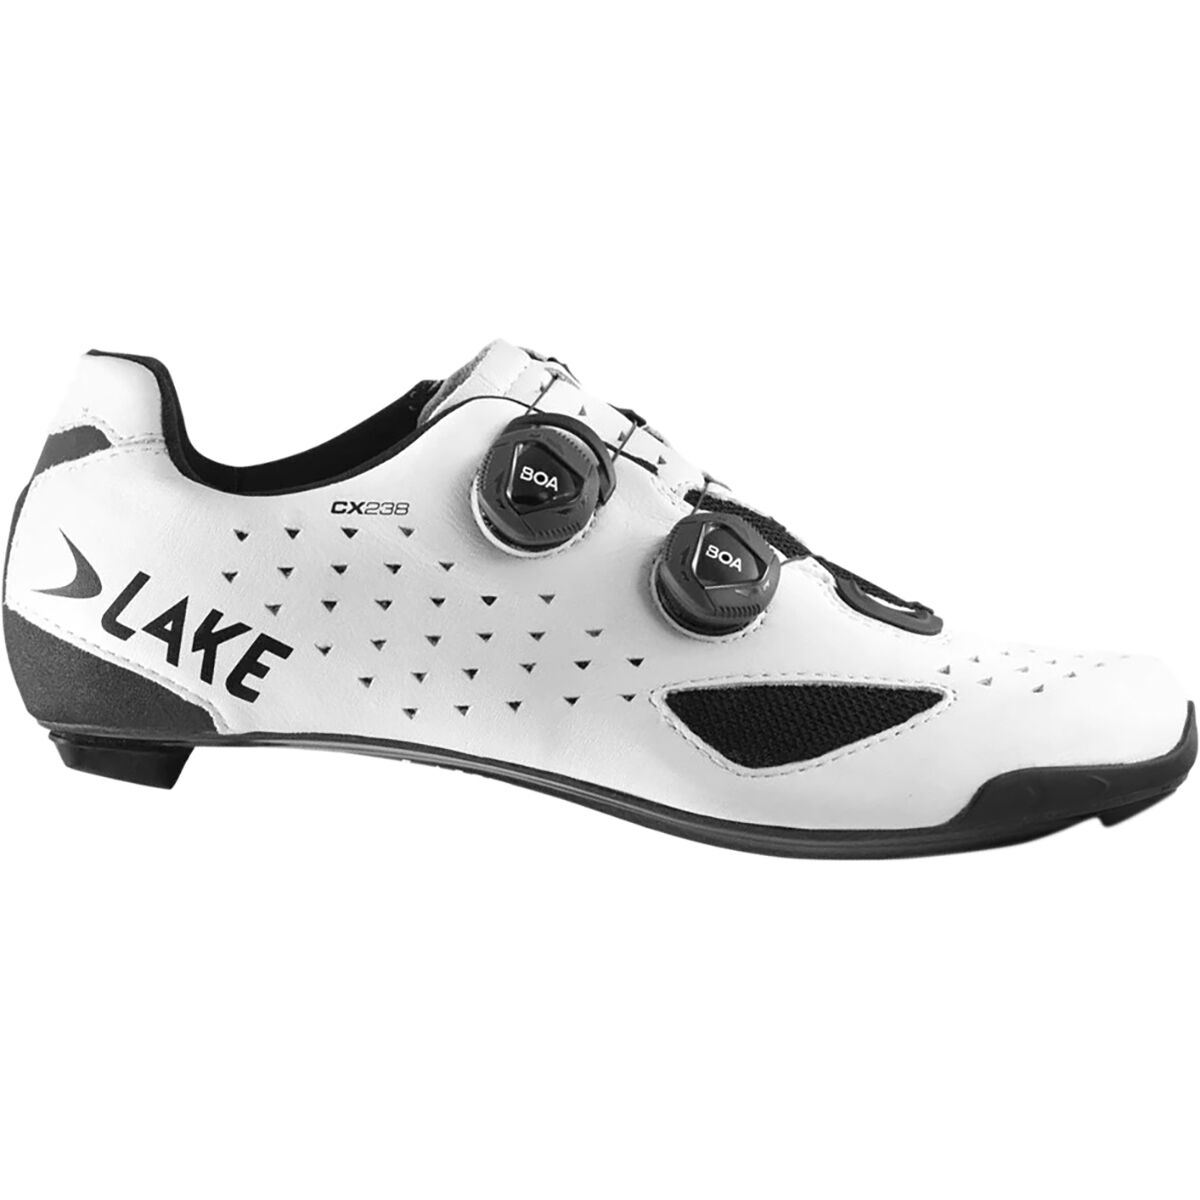 Lake CX238 Wide Cycling Shoe - Men's